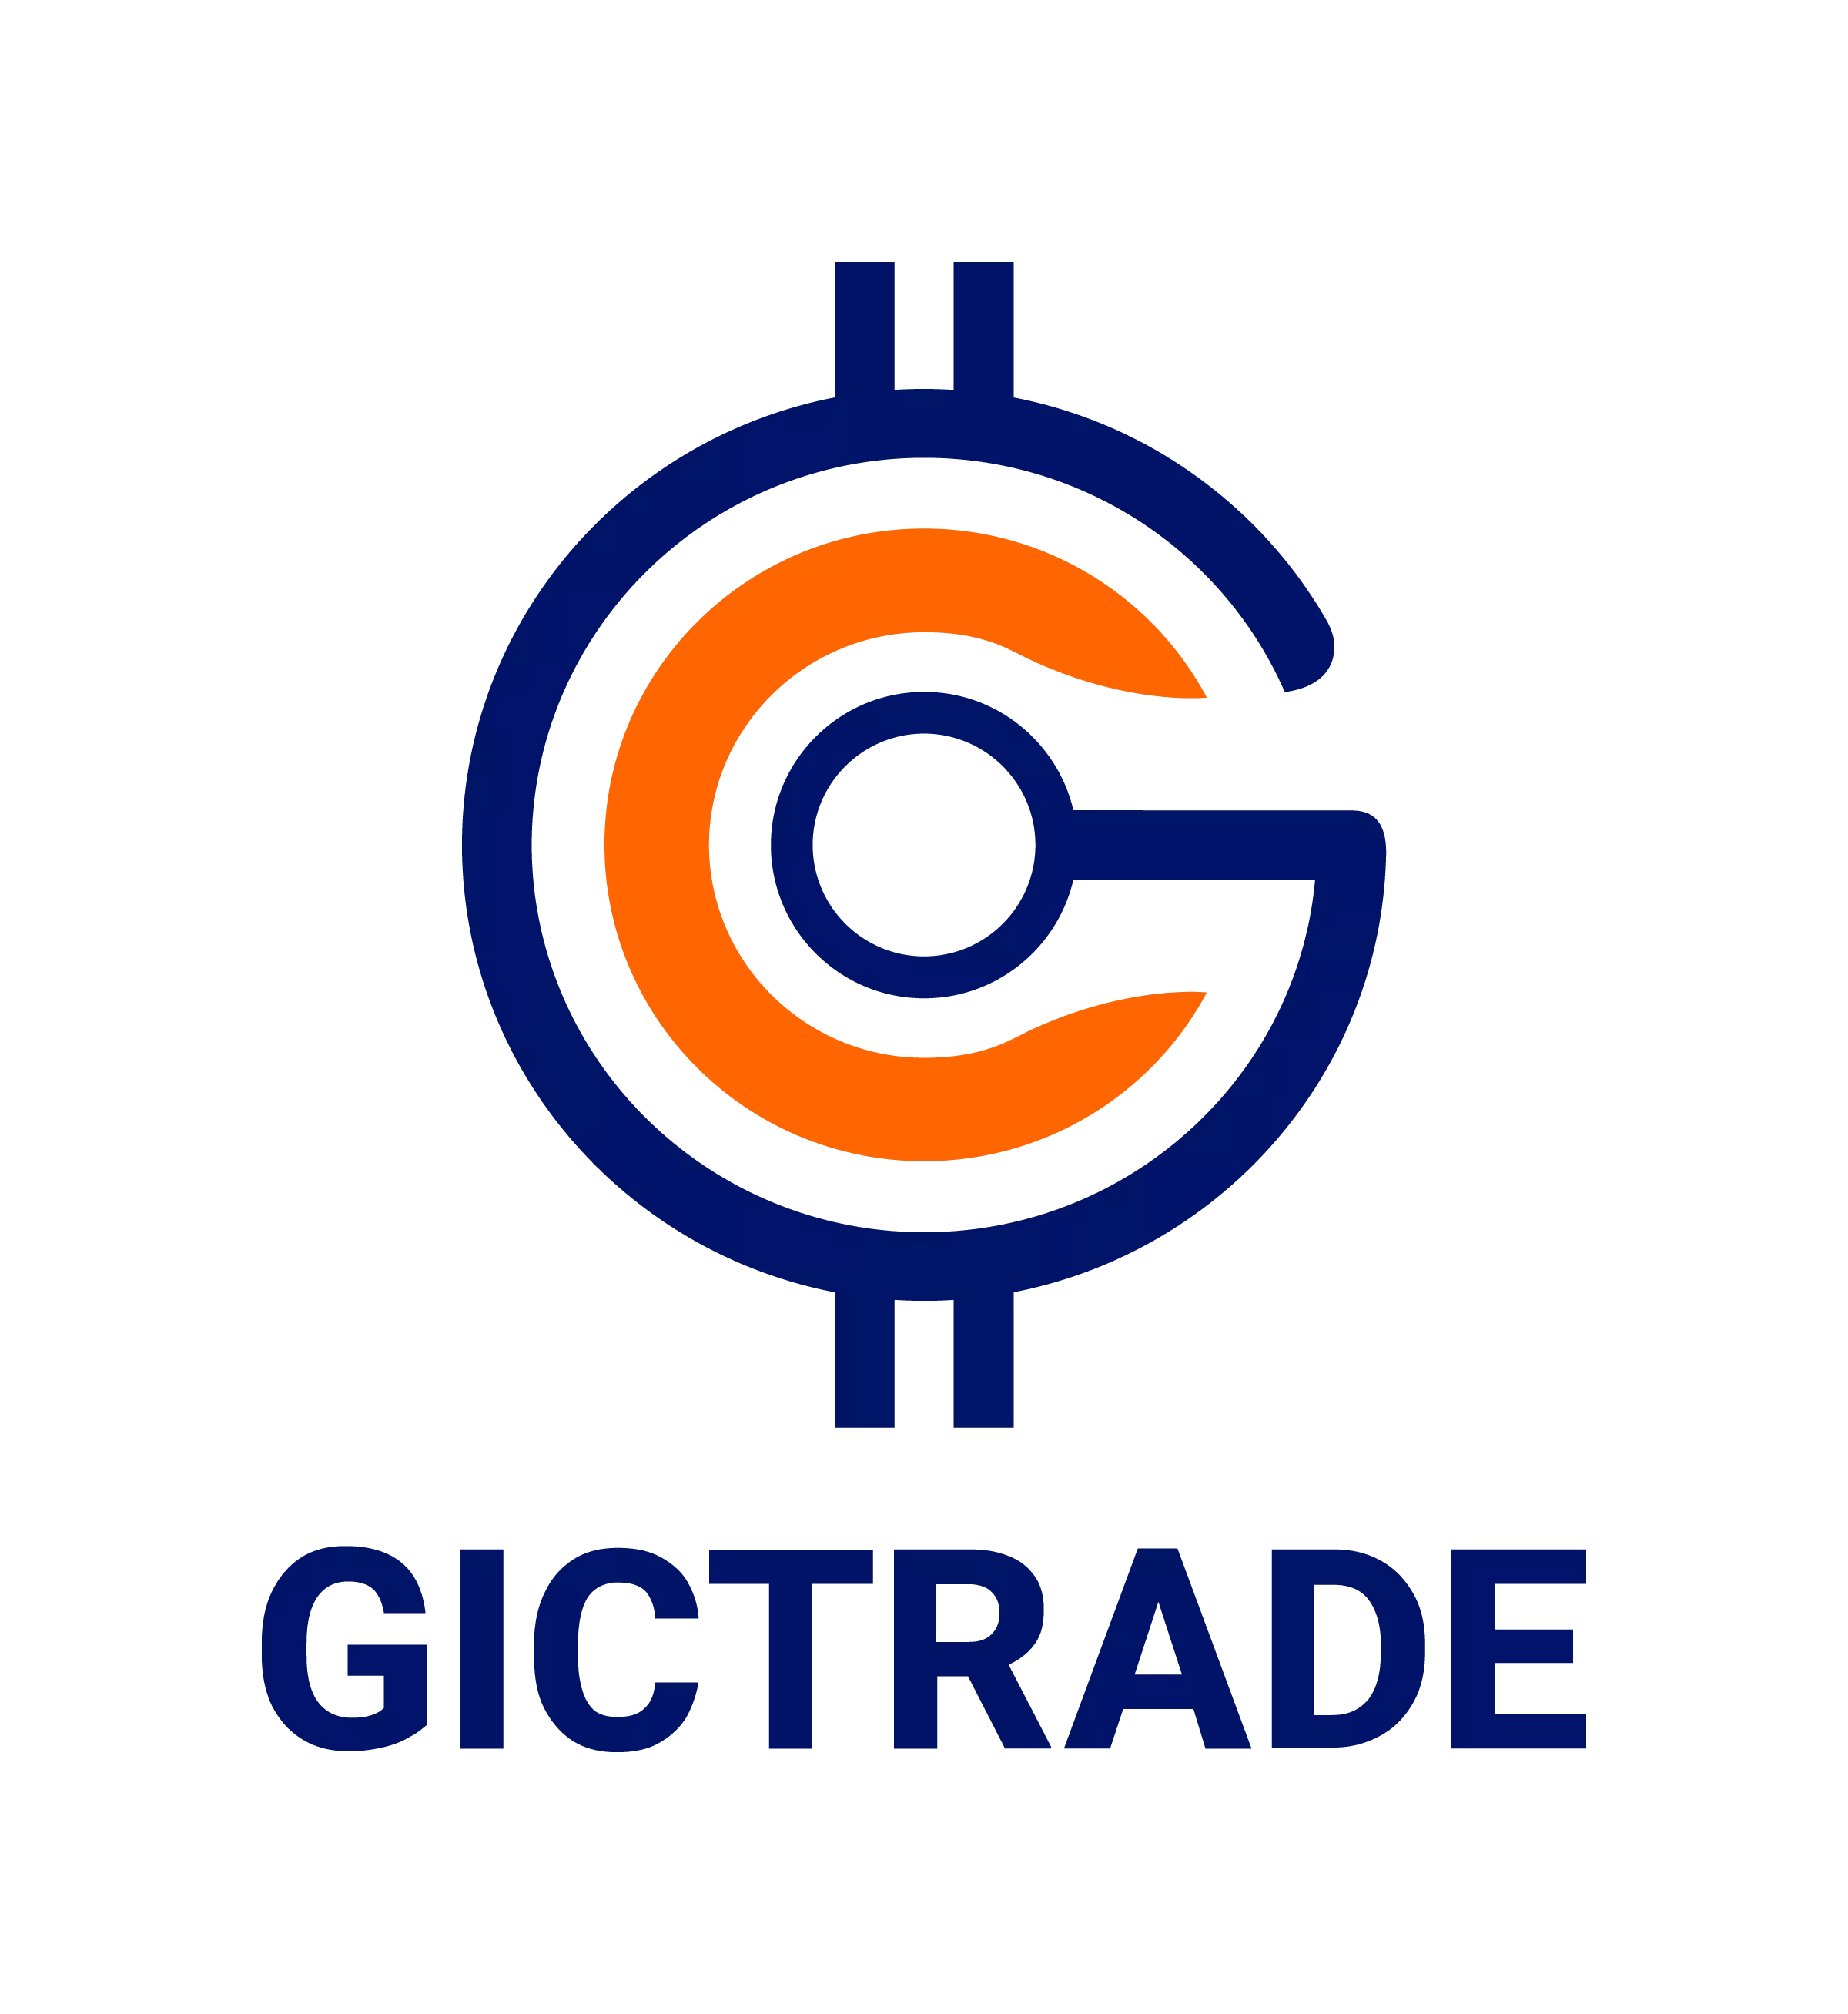 GICTrade